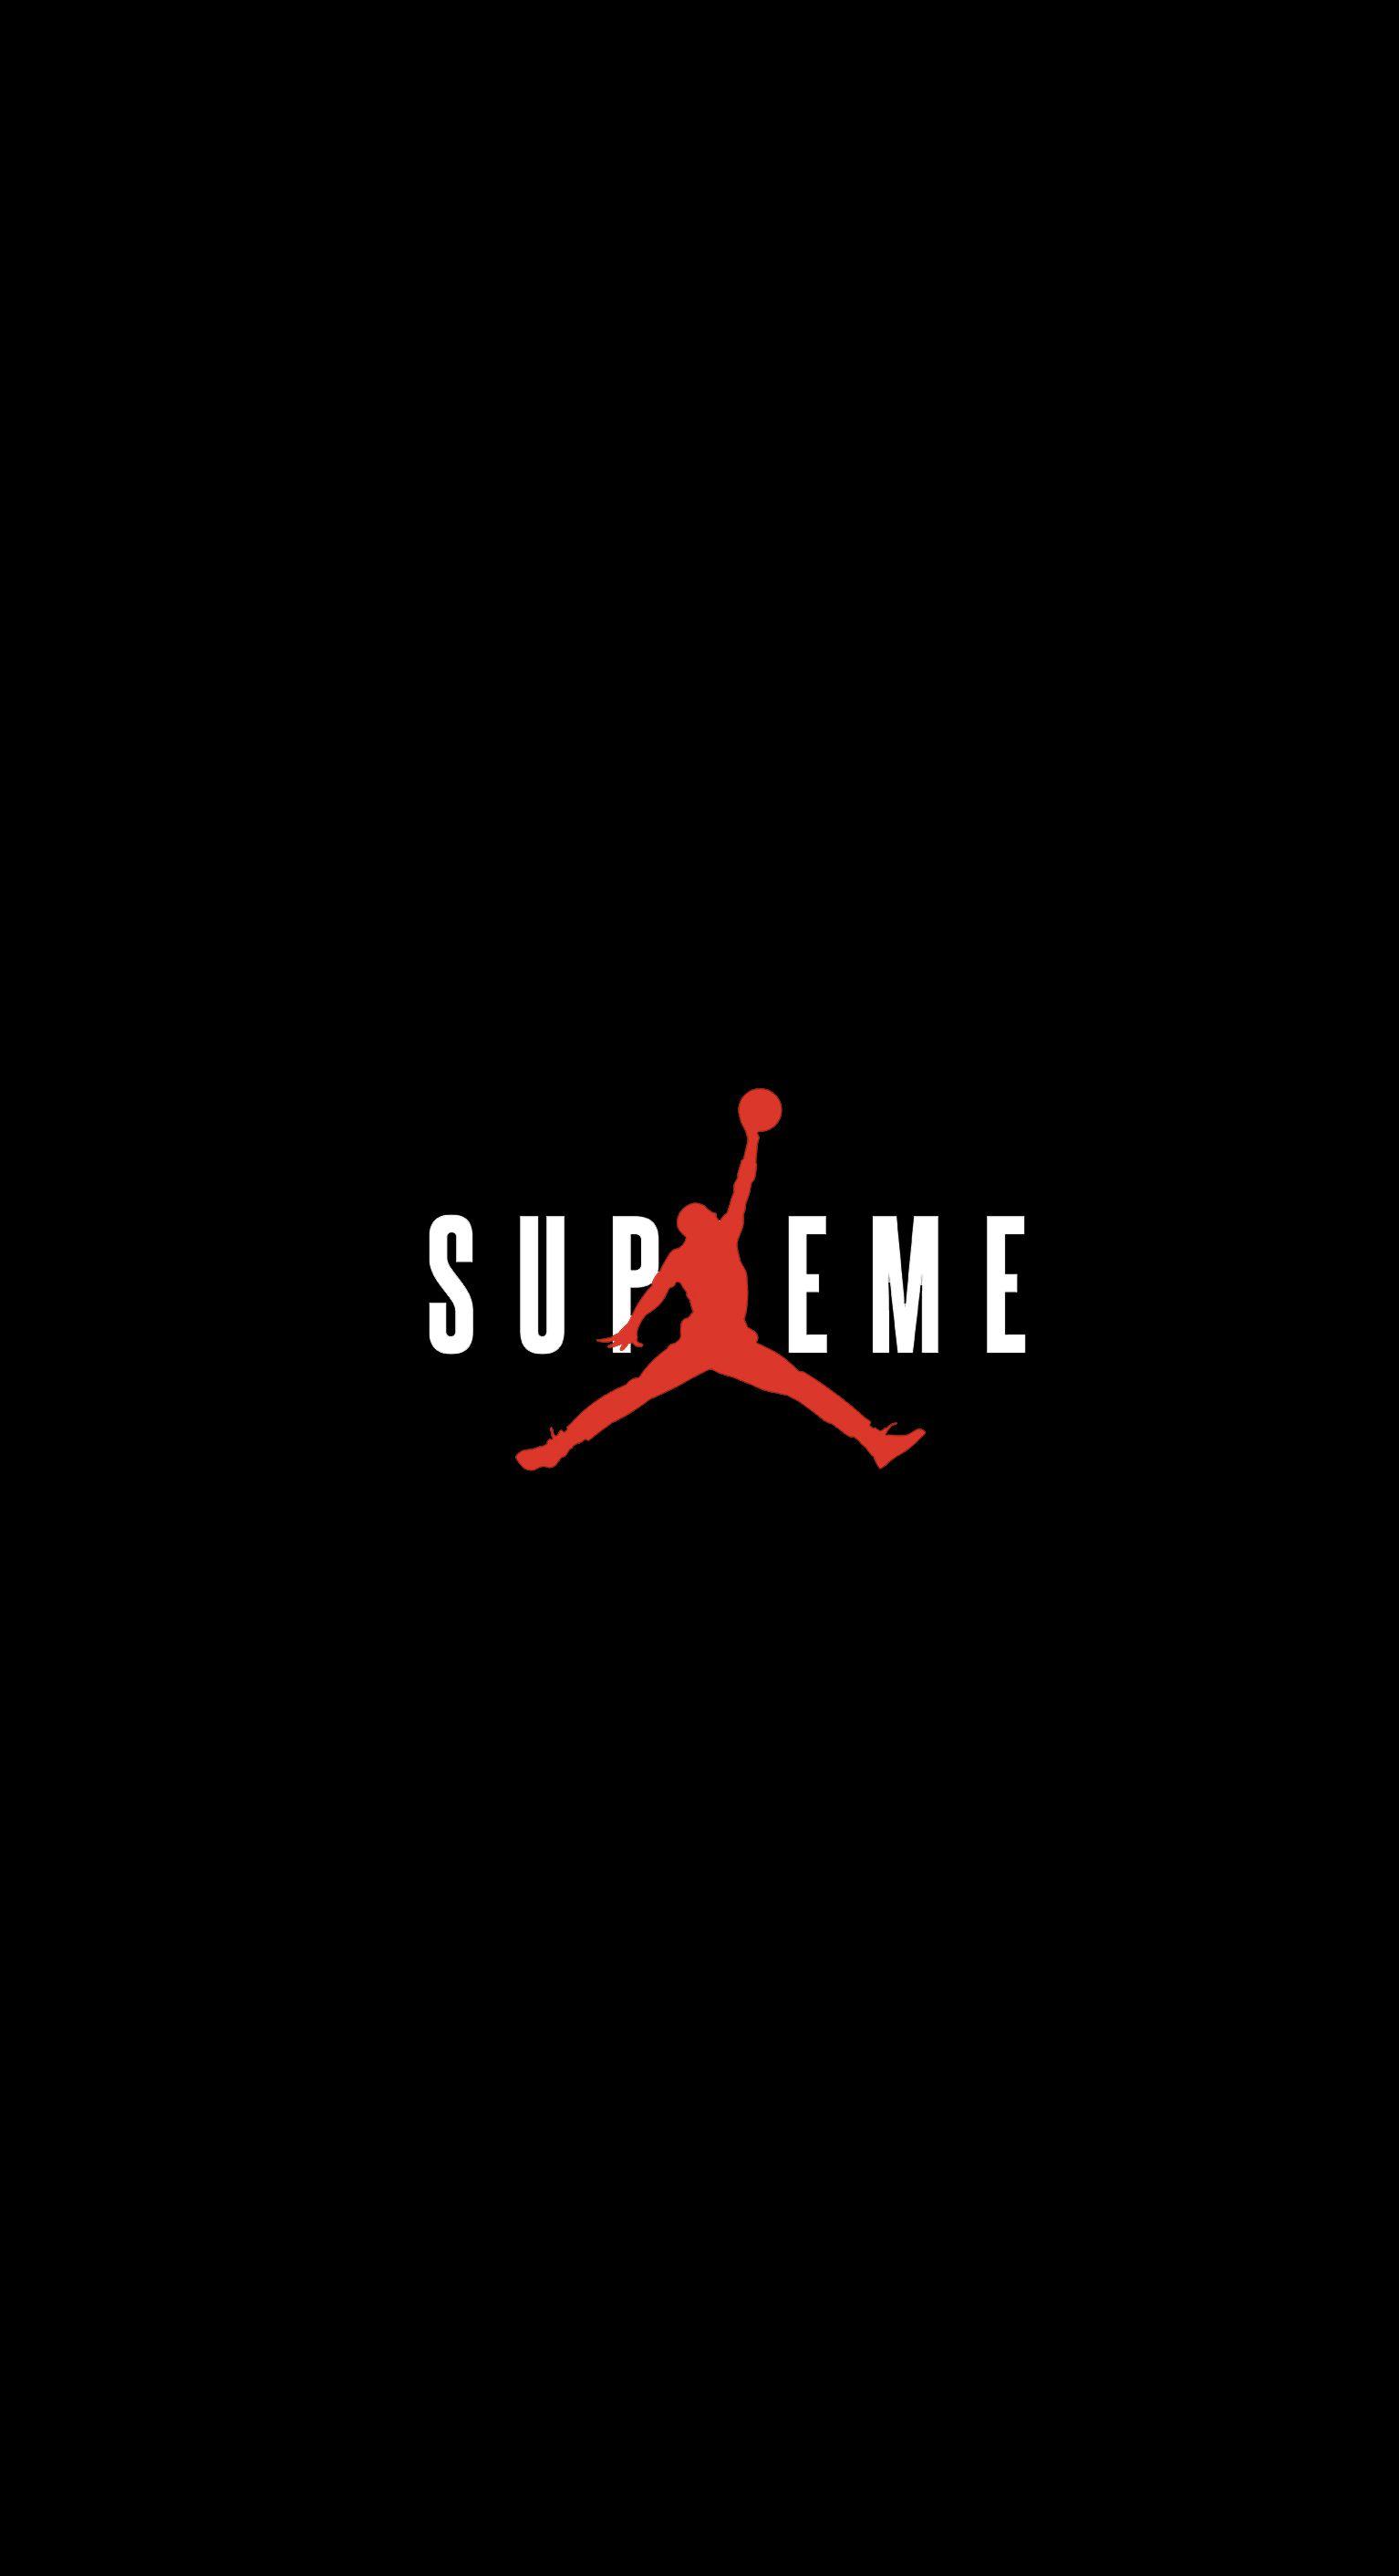 Awesome Supreme Logo - Supreme Logo Wallpaper